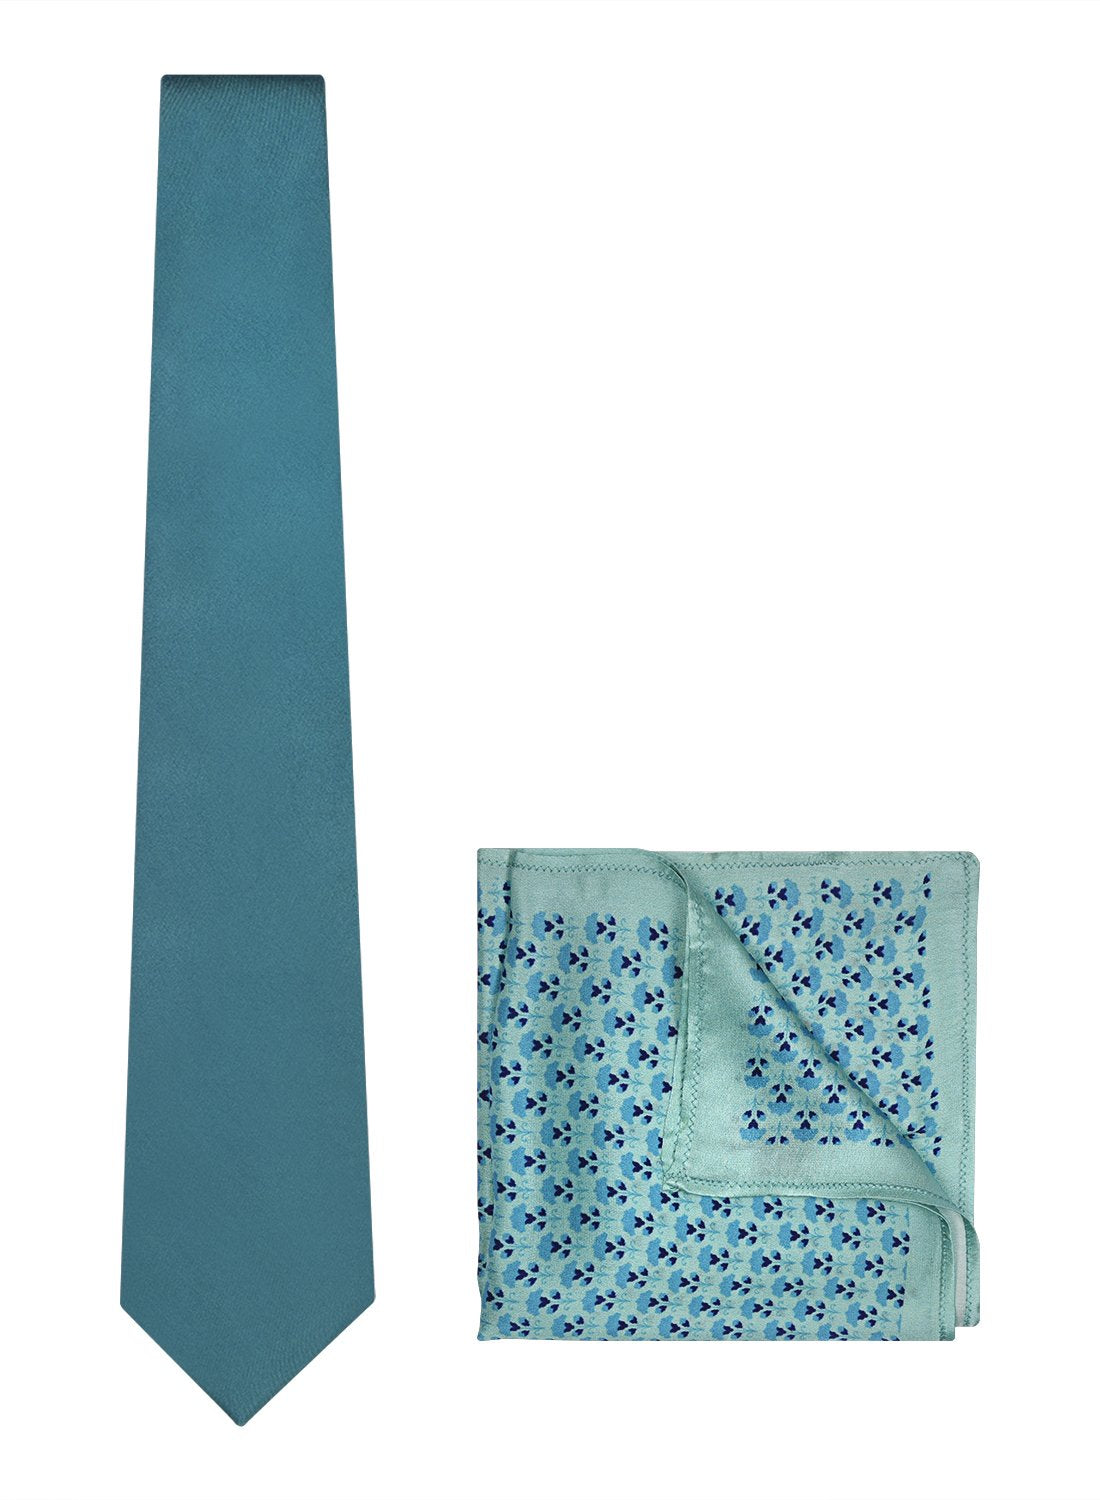 Chokore Light Blue color Plain Silk Tie & Light blue pure silk pocket square set